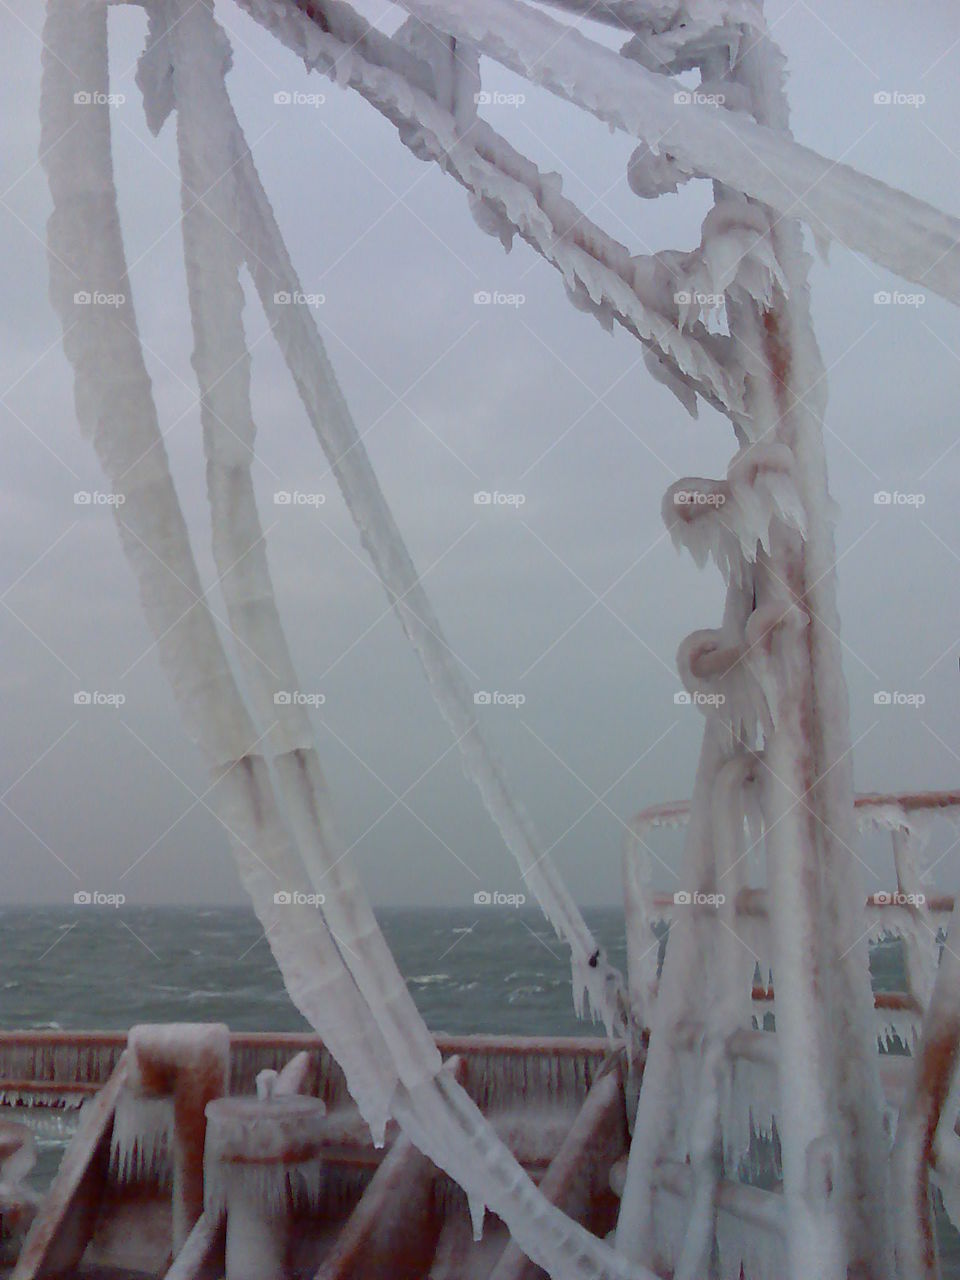 Ice on ship(Norway @ -18°c) Freezing 😱
Small Davit.